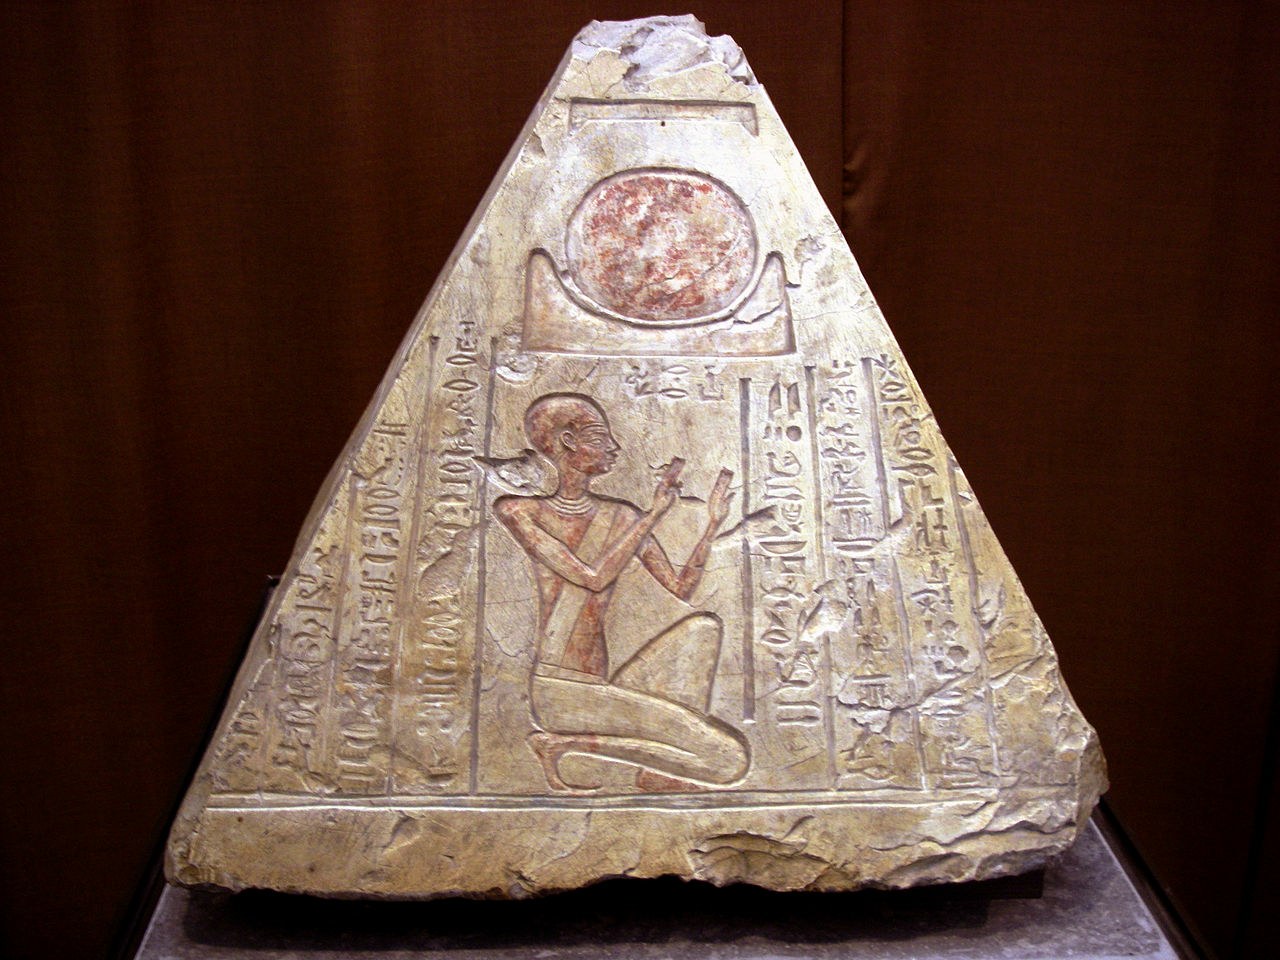 Stari telegraf: svetlobni signali, ki so se uporabljali za komunikacijo v starem Egiptu? 1.